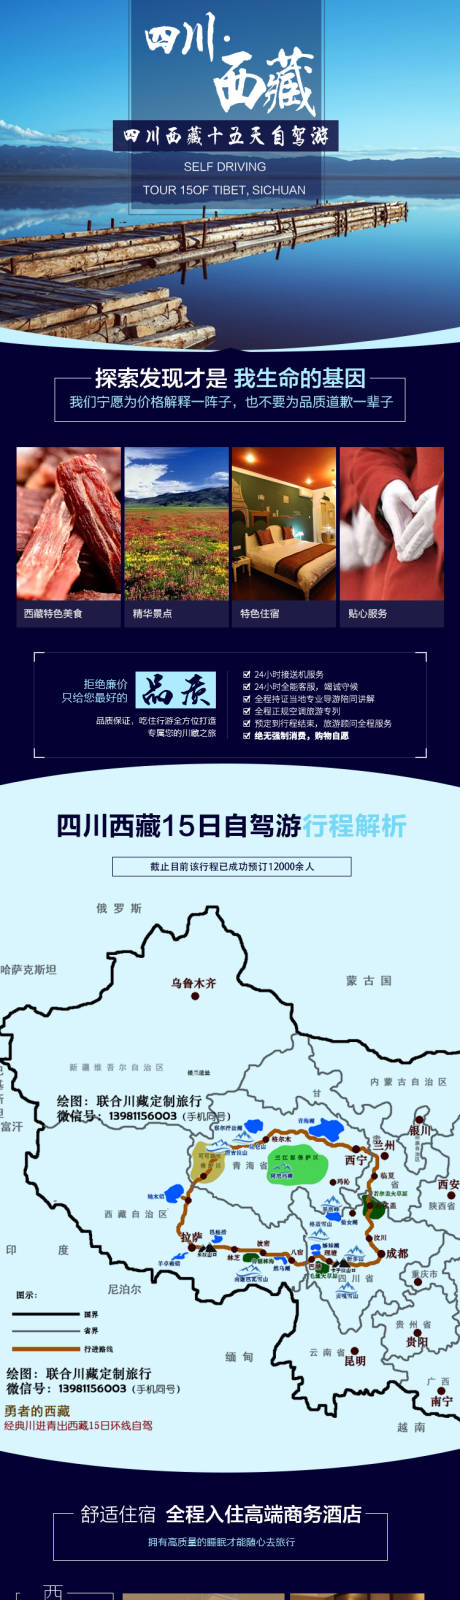 四川西藏环线旅游详情页